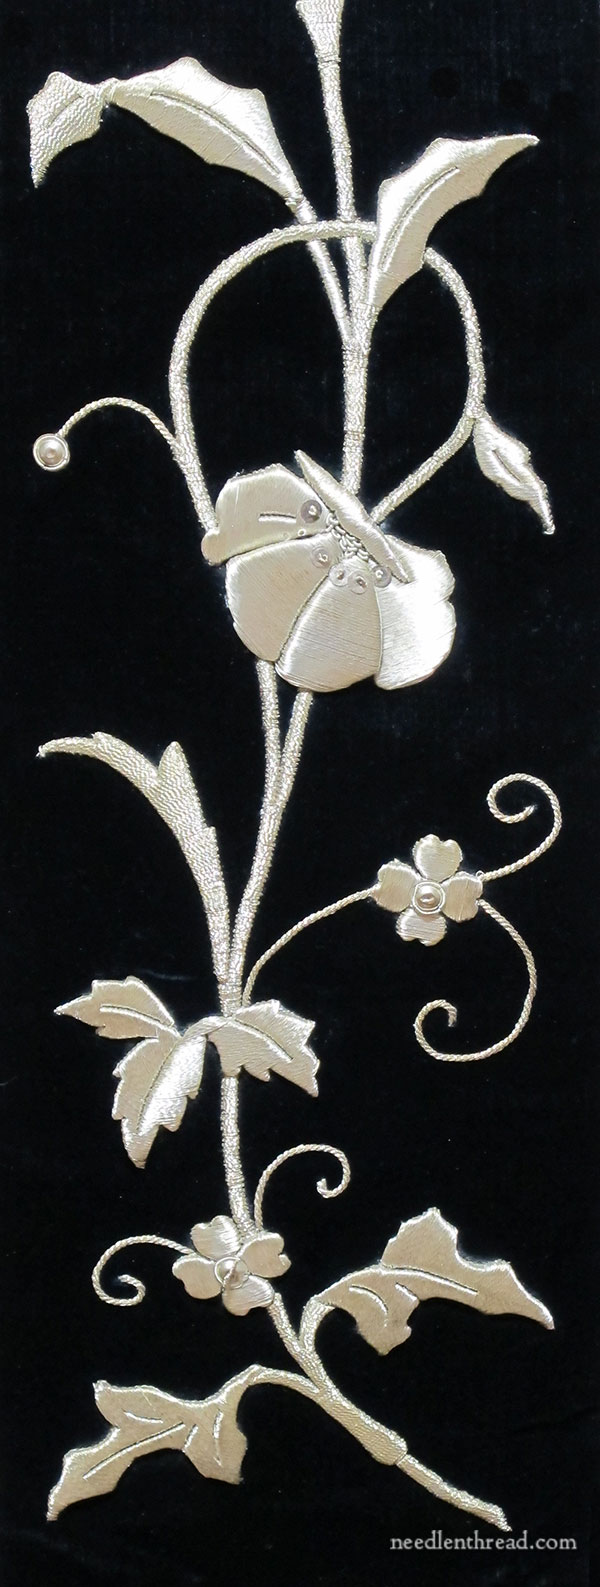 Raised goldwork embroidery on black velvet